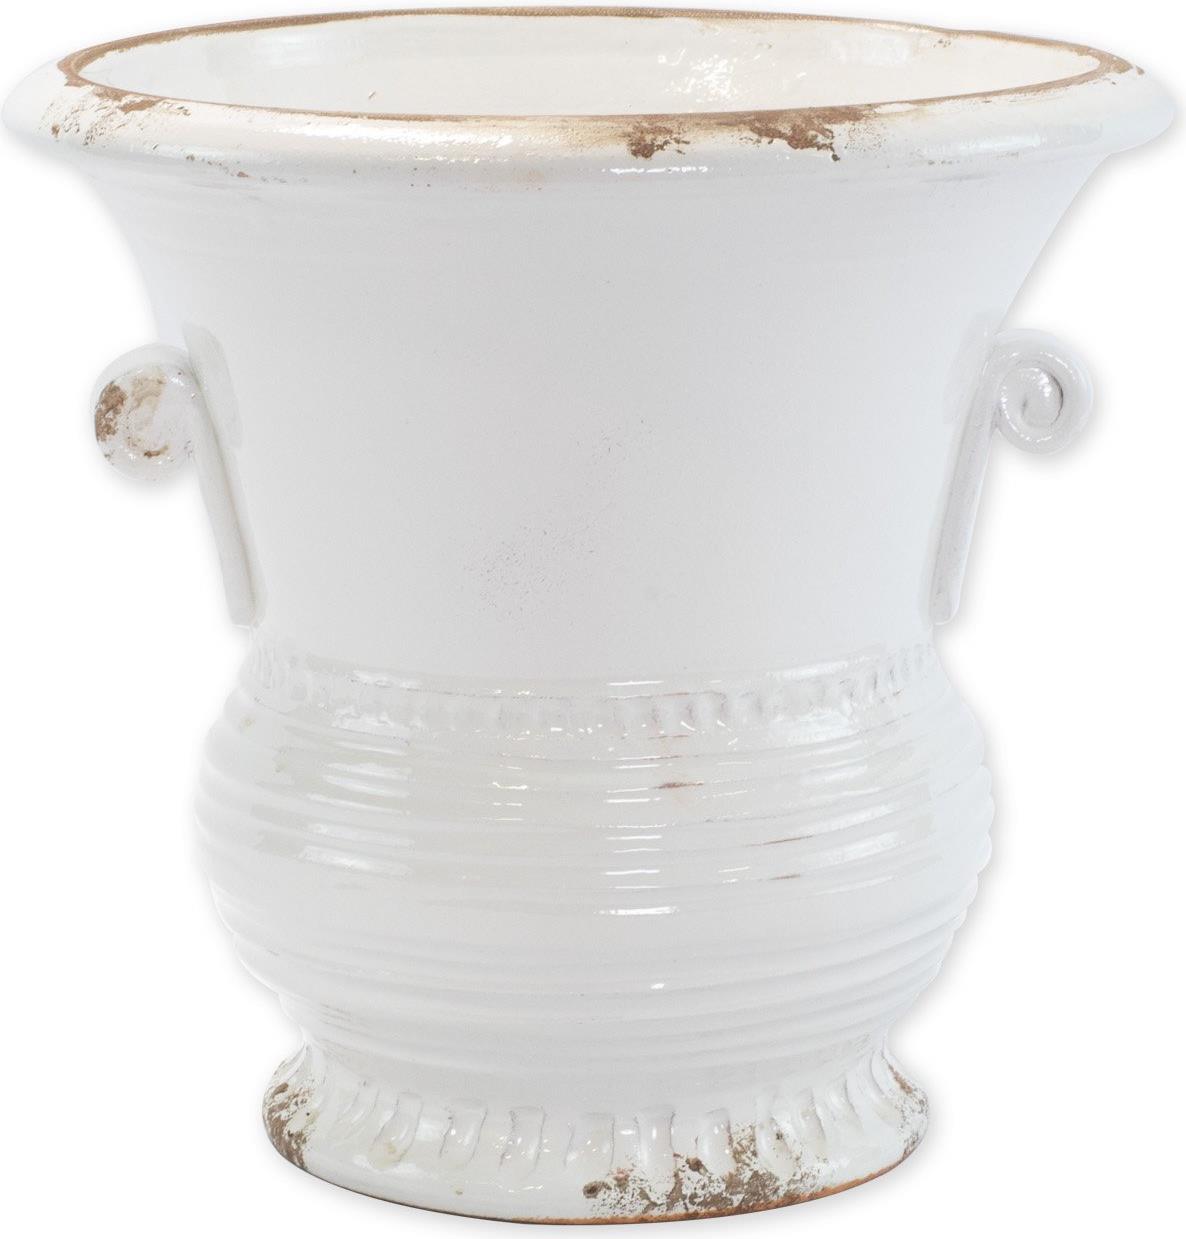 Planter Vase VIETRI Rustic Medium White Ceramic Hand-Crafted-Image 1